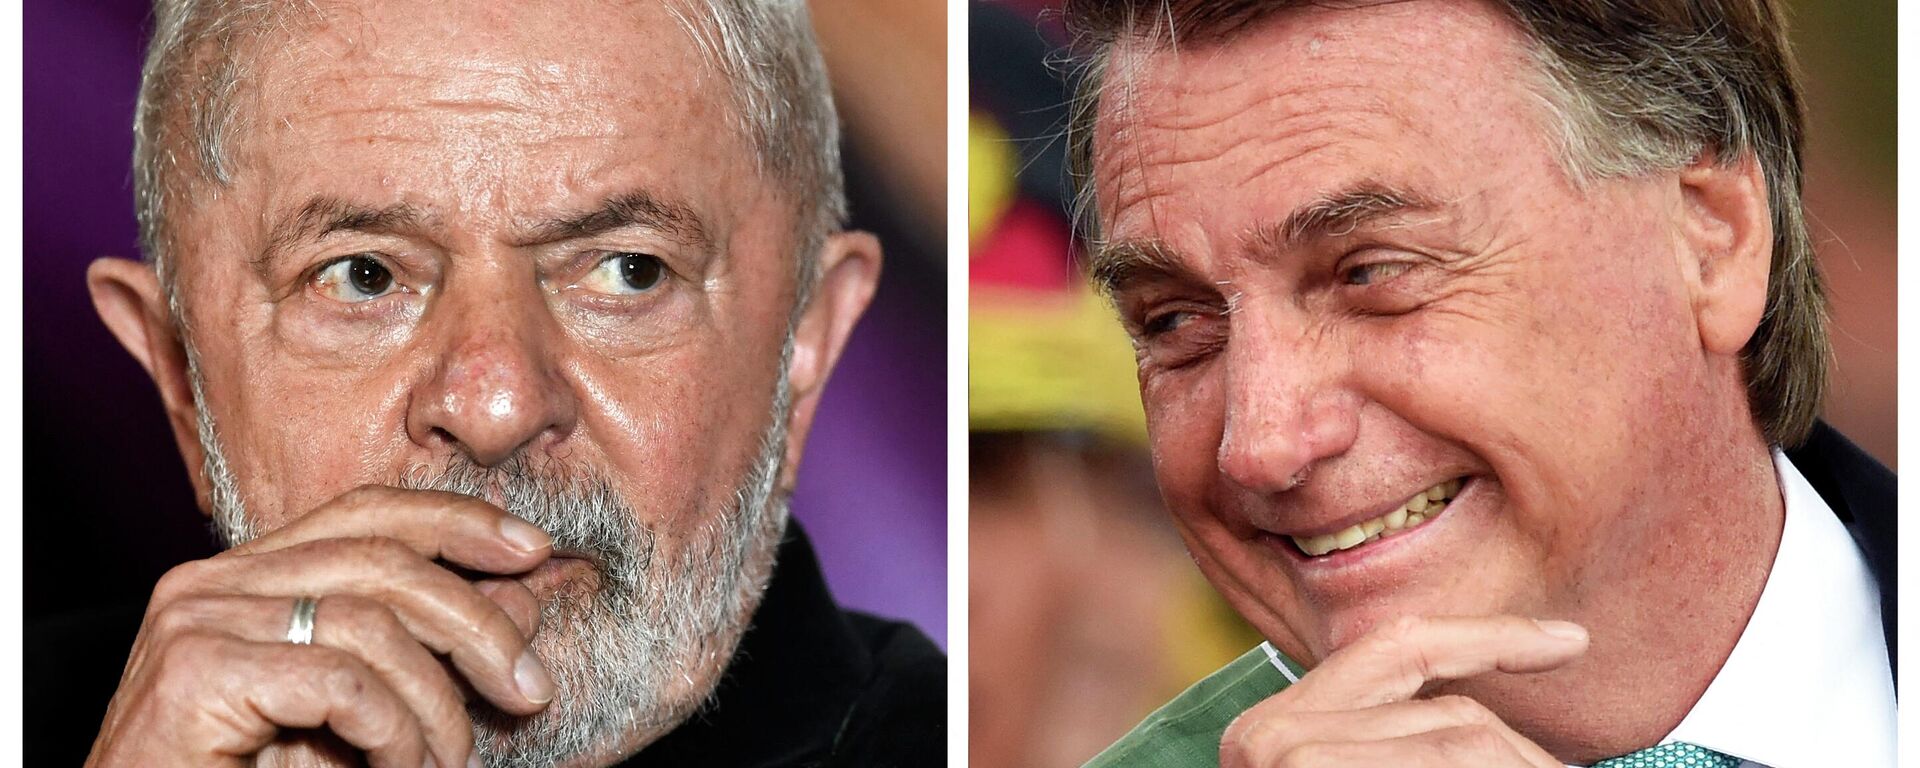 El ex presidente brasileño, Luiz Inacio Lula da Silva (2003-2011) y el presidente actual del país, Jair Bolsonaro - Sputnik Mundo, 1920, 01.10.2022